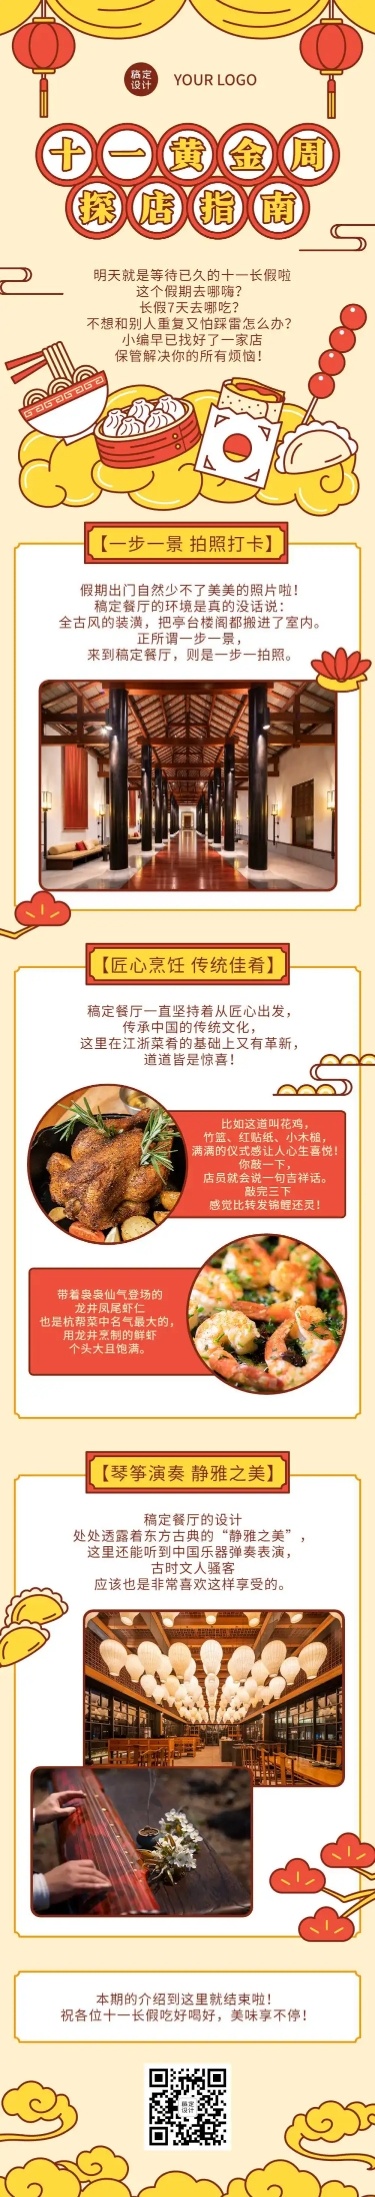 国庆餐饮美食探店中国风文章长图